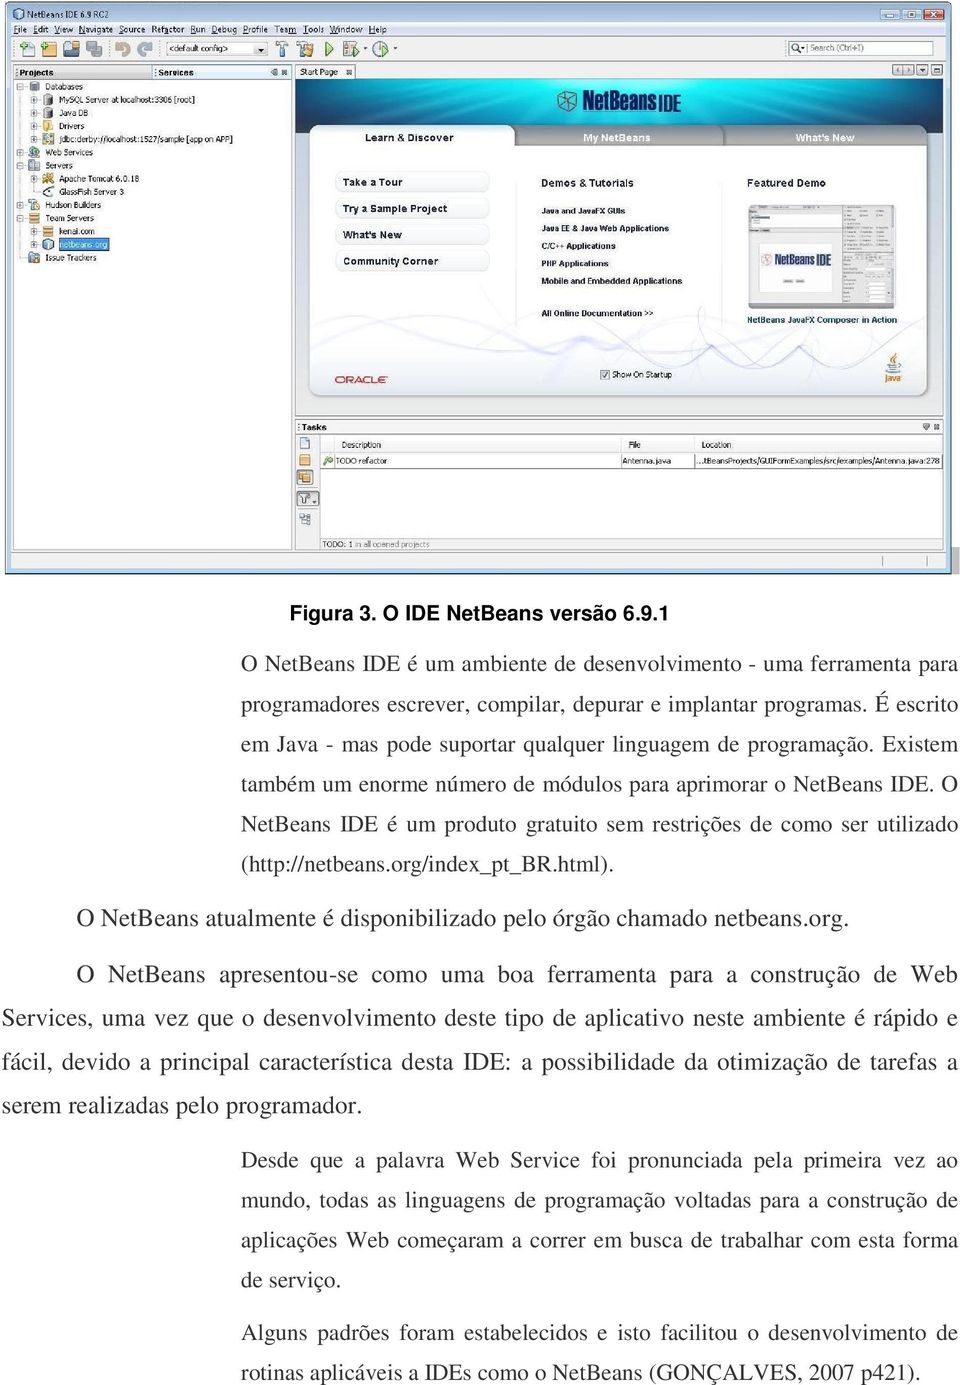 O NetBeans IDE é um produto gratuito sem restrições de como ser utilizado (http://netbeans.org/